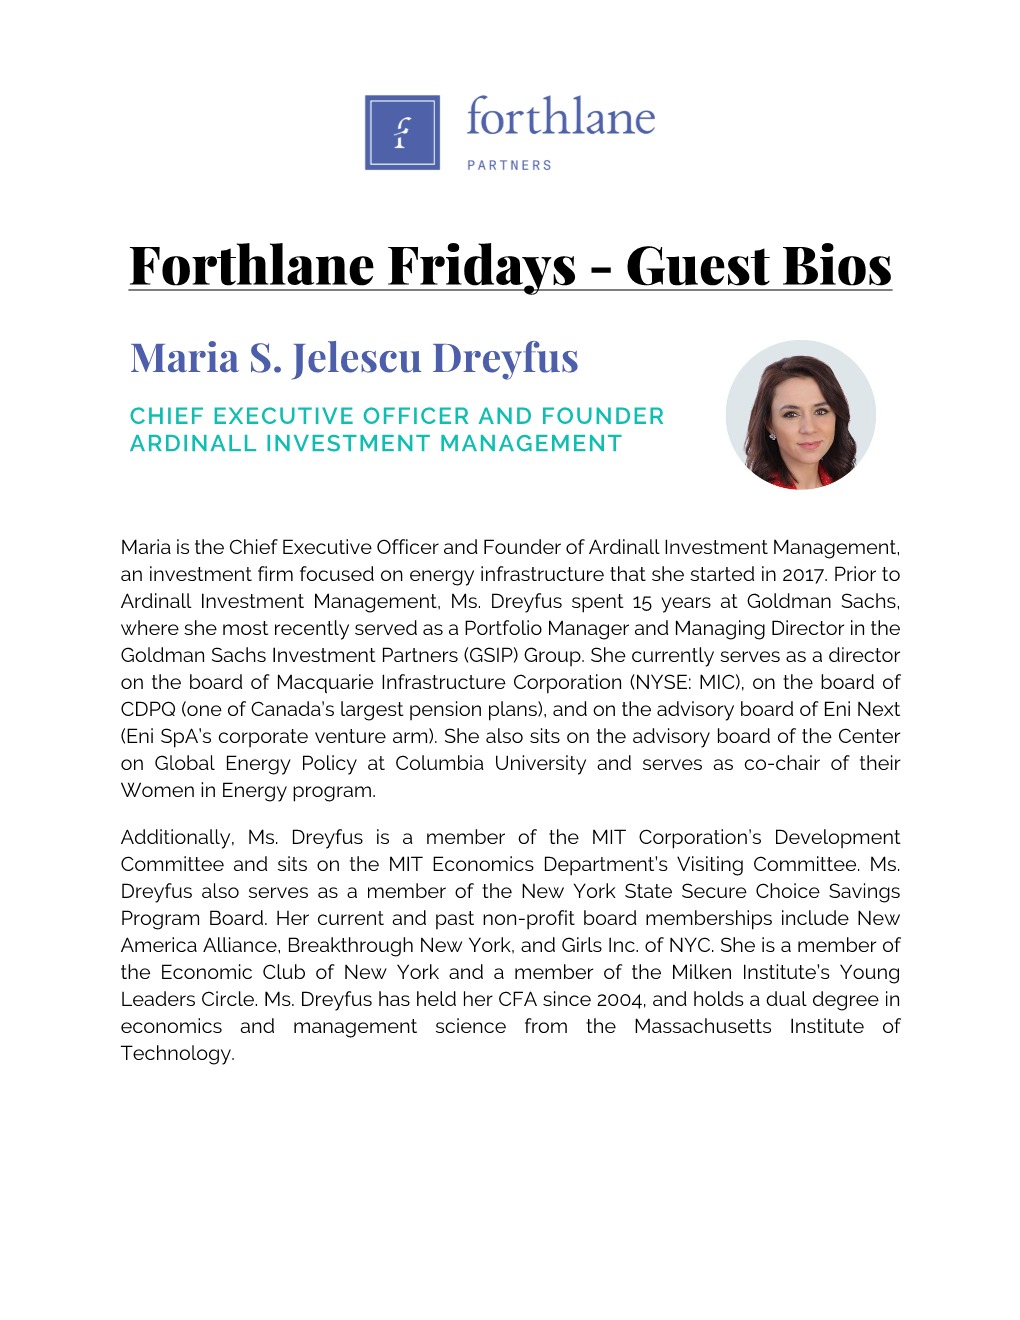 Forthlane Fridays - Guest Bios